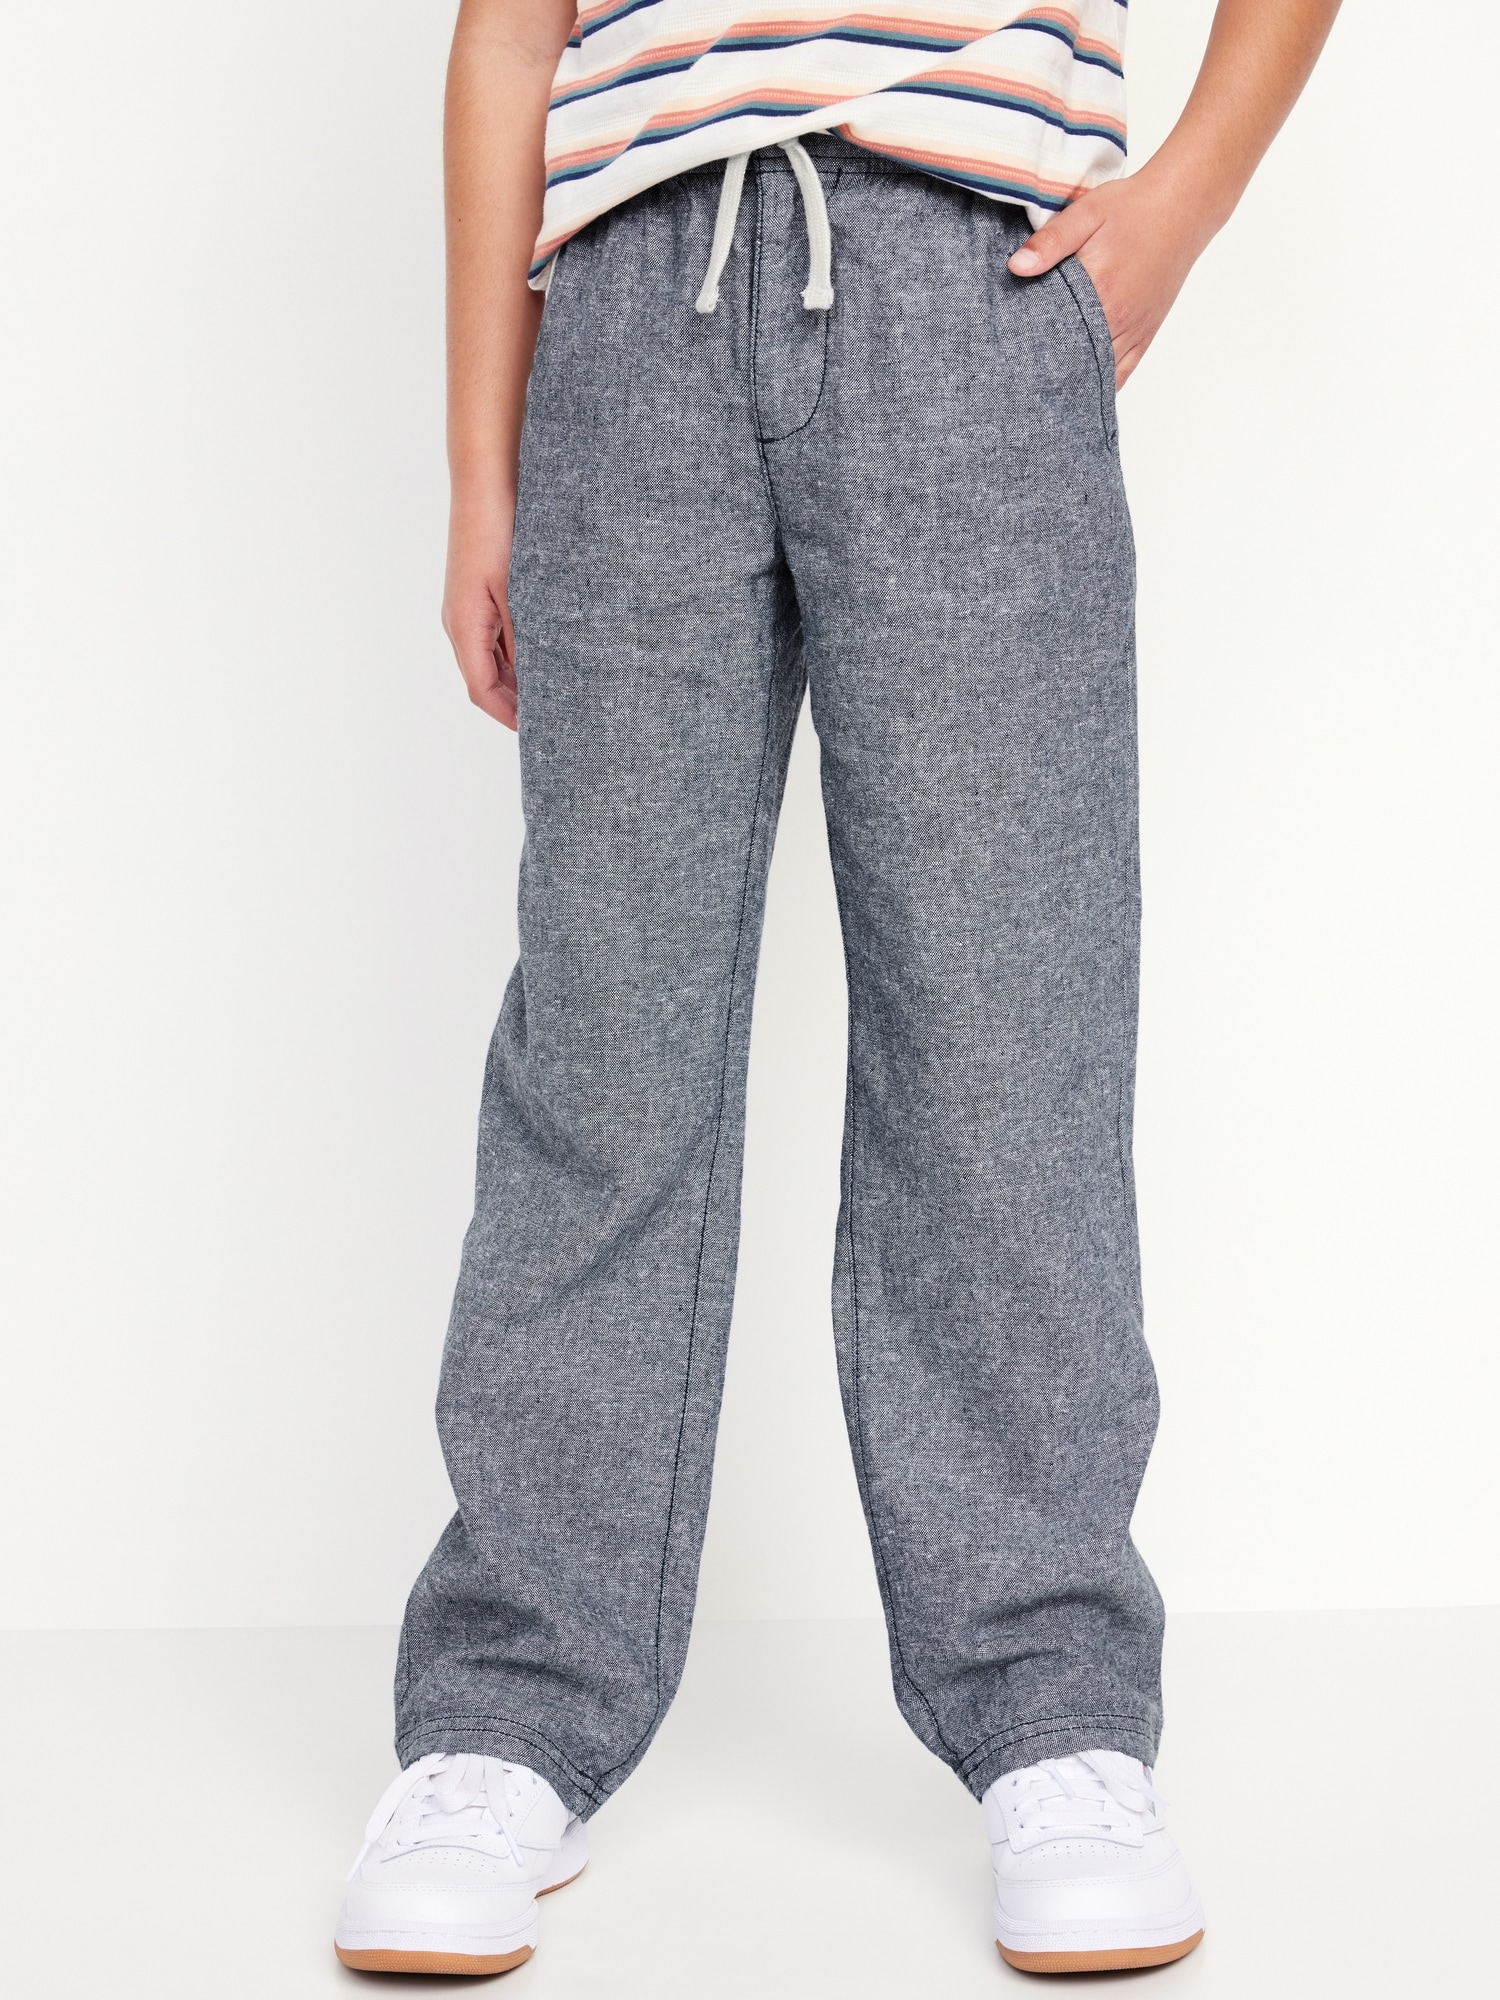 Straight Pull-On Linen-Blend Pants for Boys